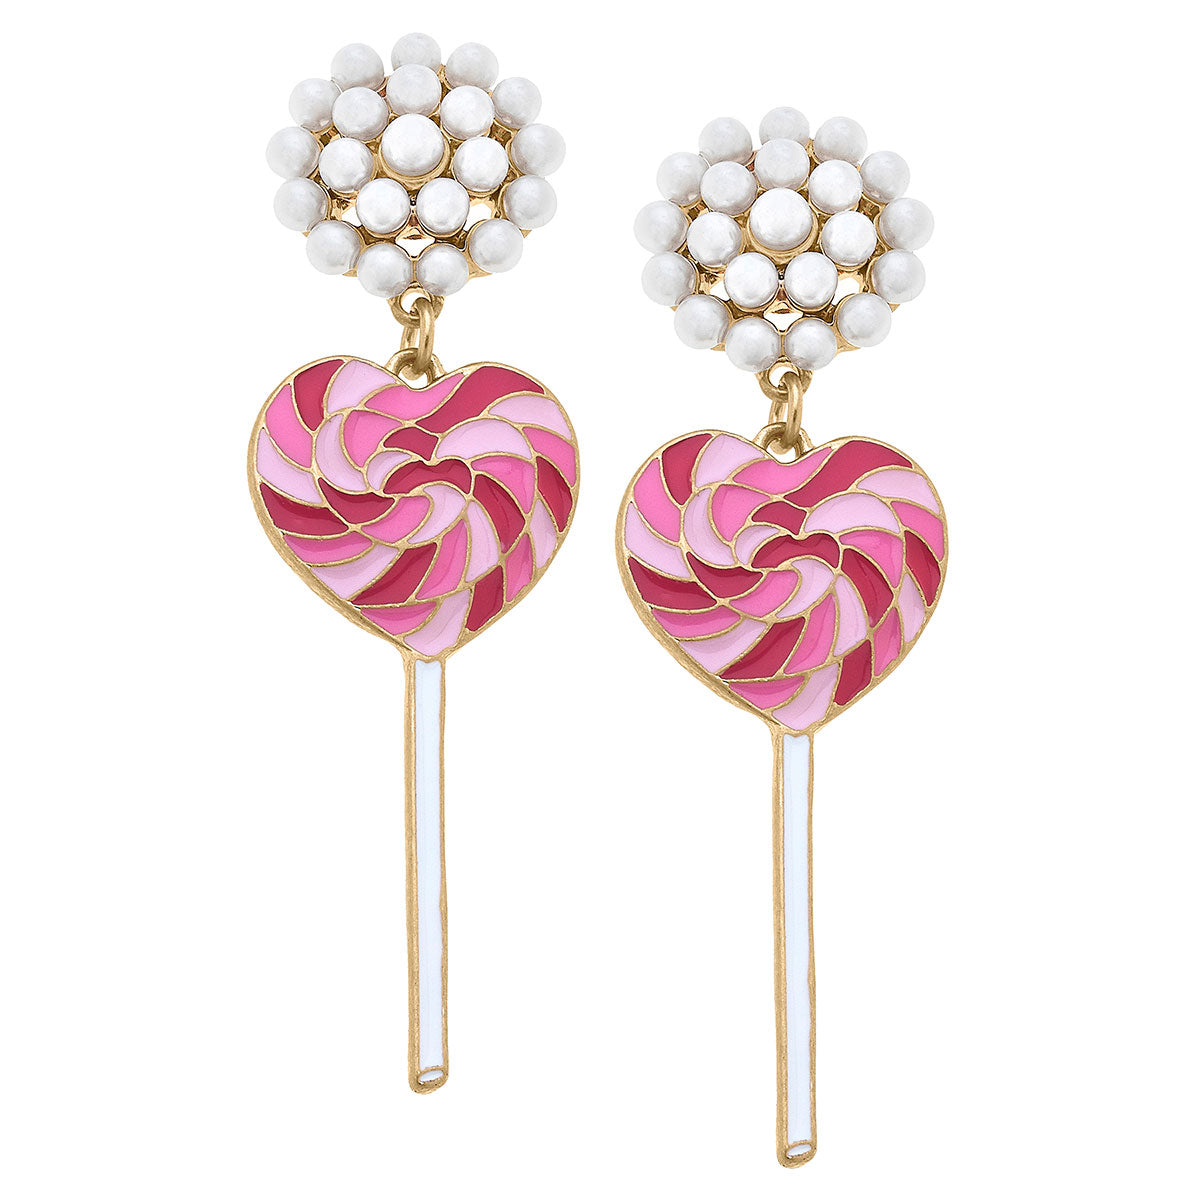 Love Lollipop Enamel Earrings in Pink & Fuchsia